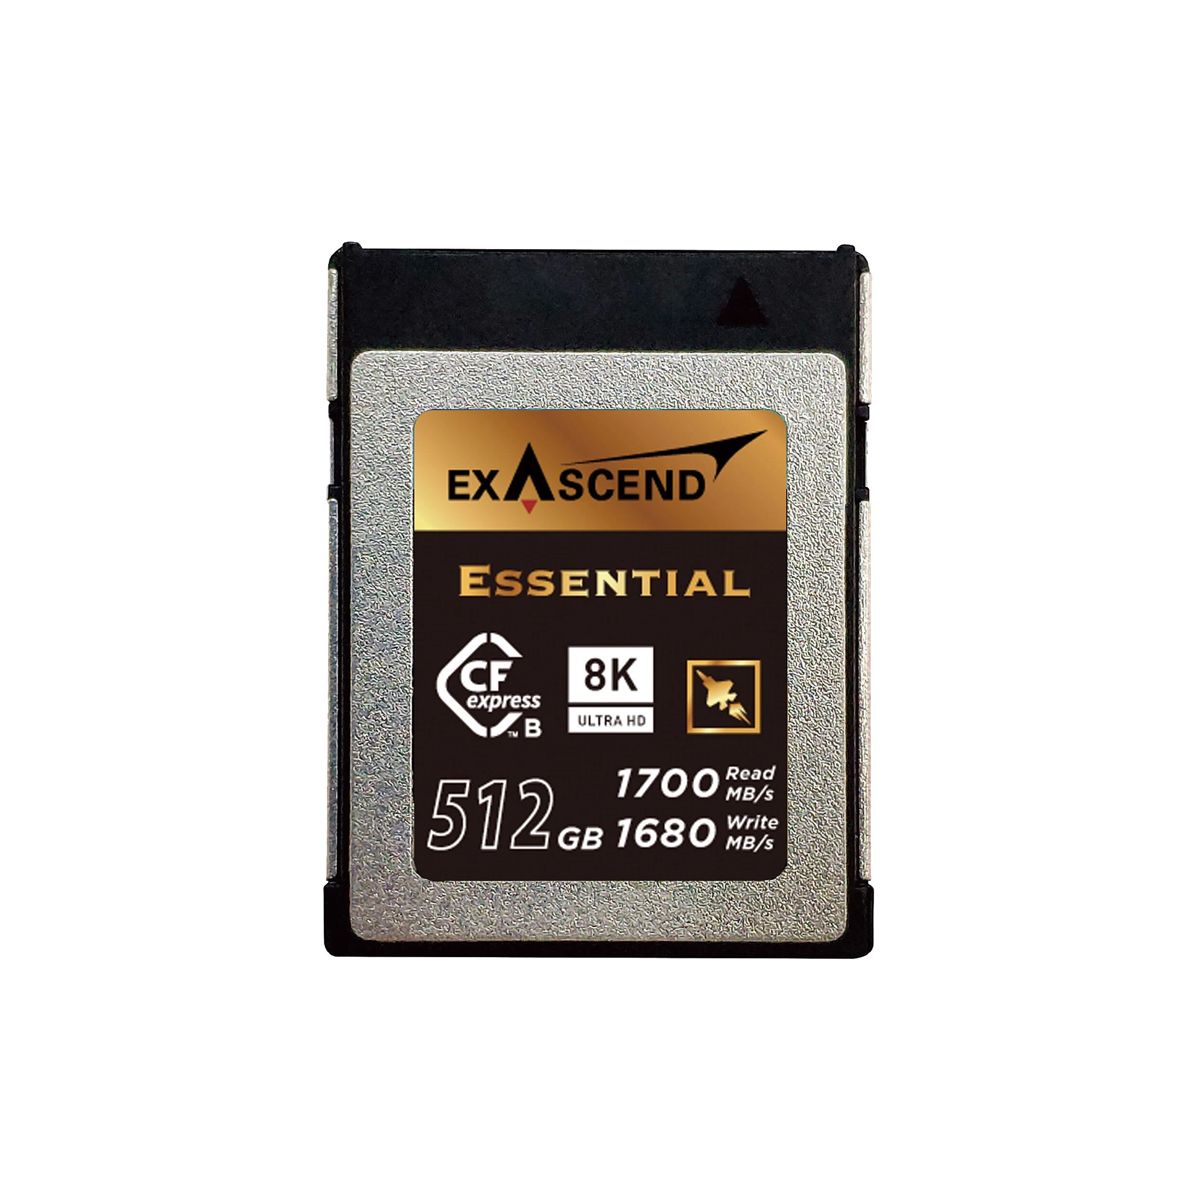  Thẻ nhớ CF Express (Type B) - Essential - 512GB 1700MB/s hiệu Exascend - Chính hãng 